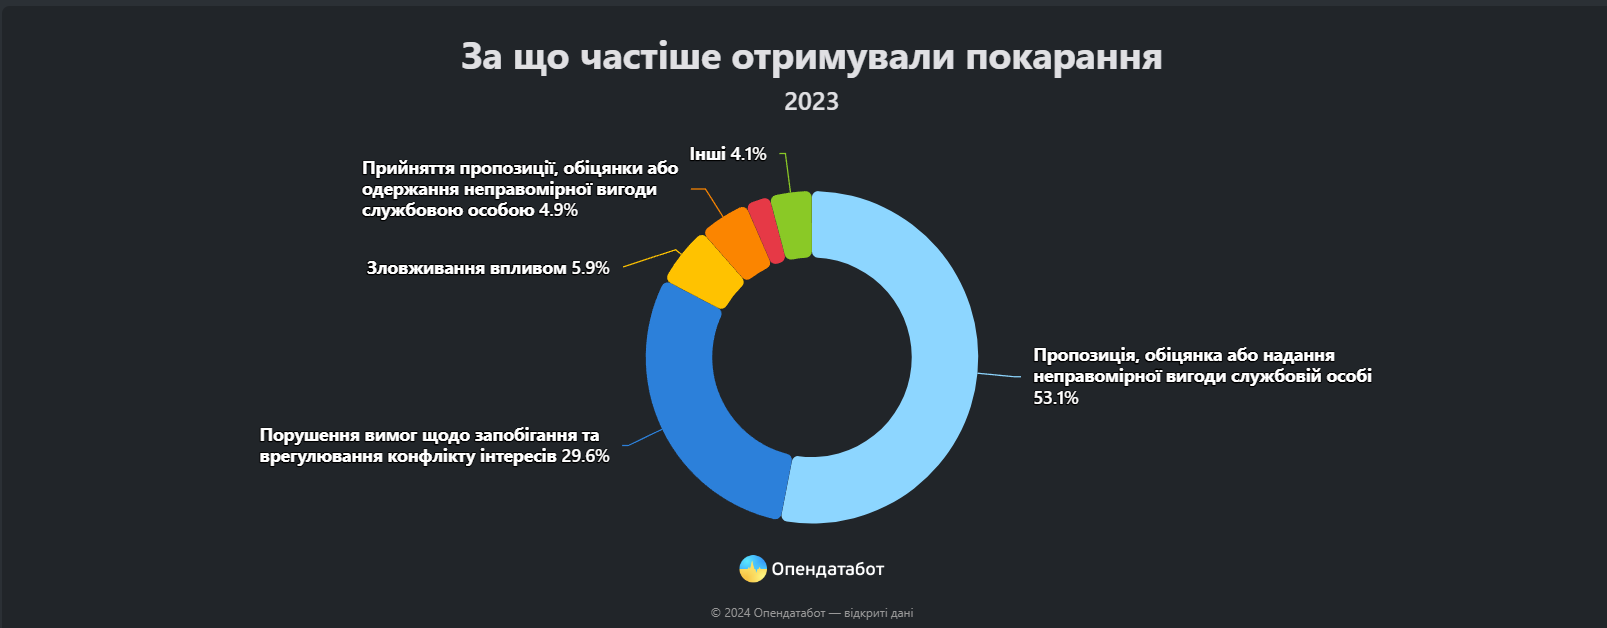 Одесщина заняла третье место по количеству коррупционеров